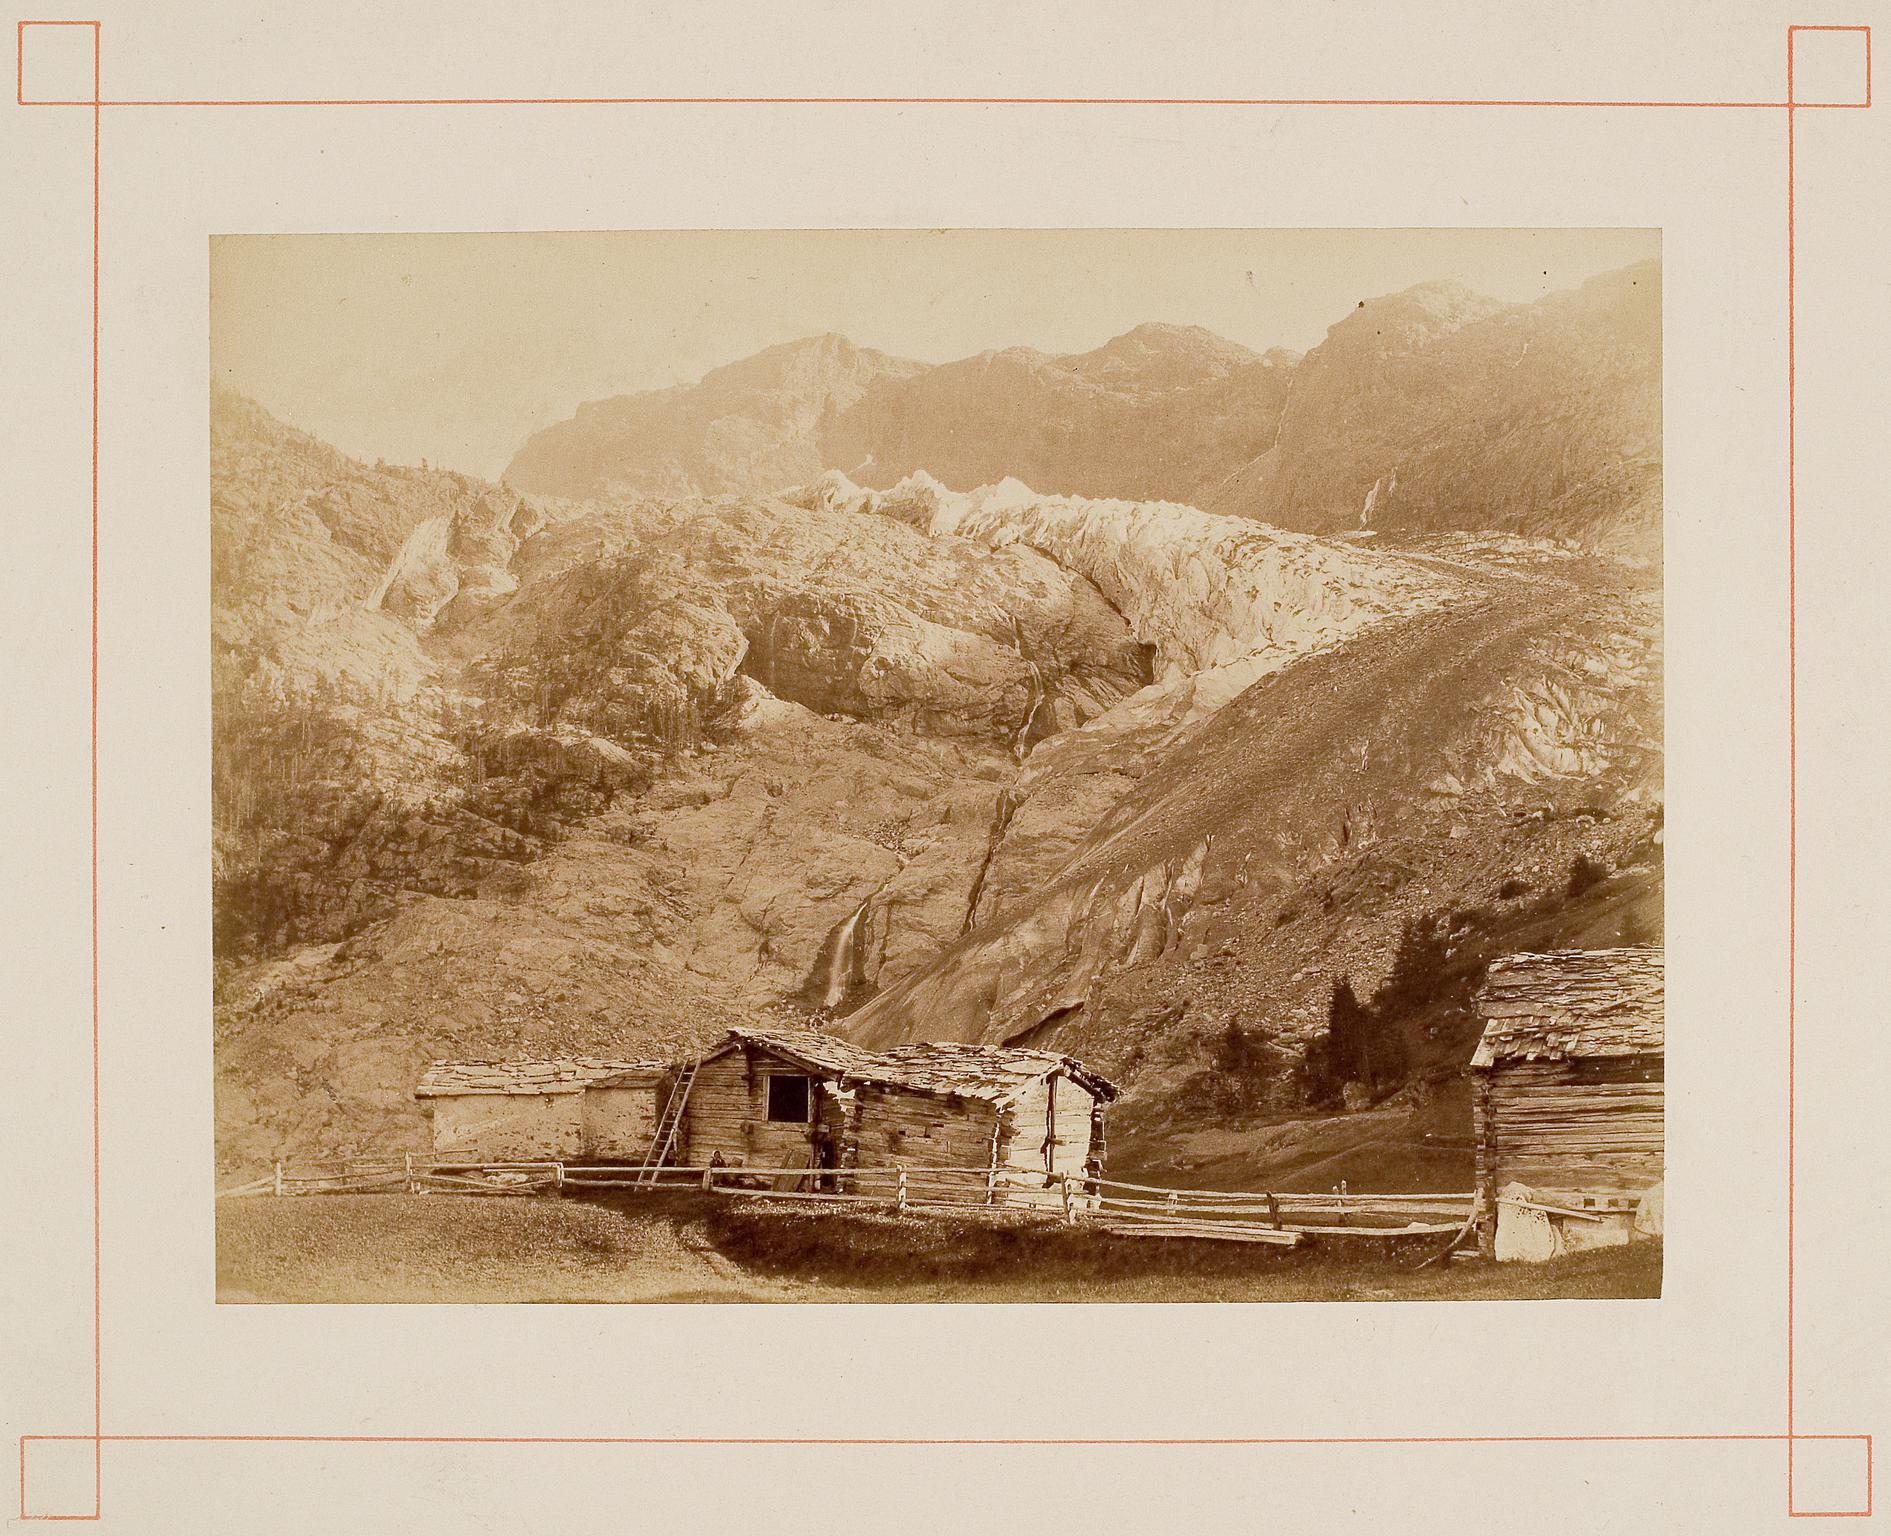 Mountain landscape, photograph